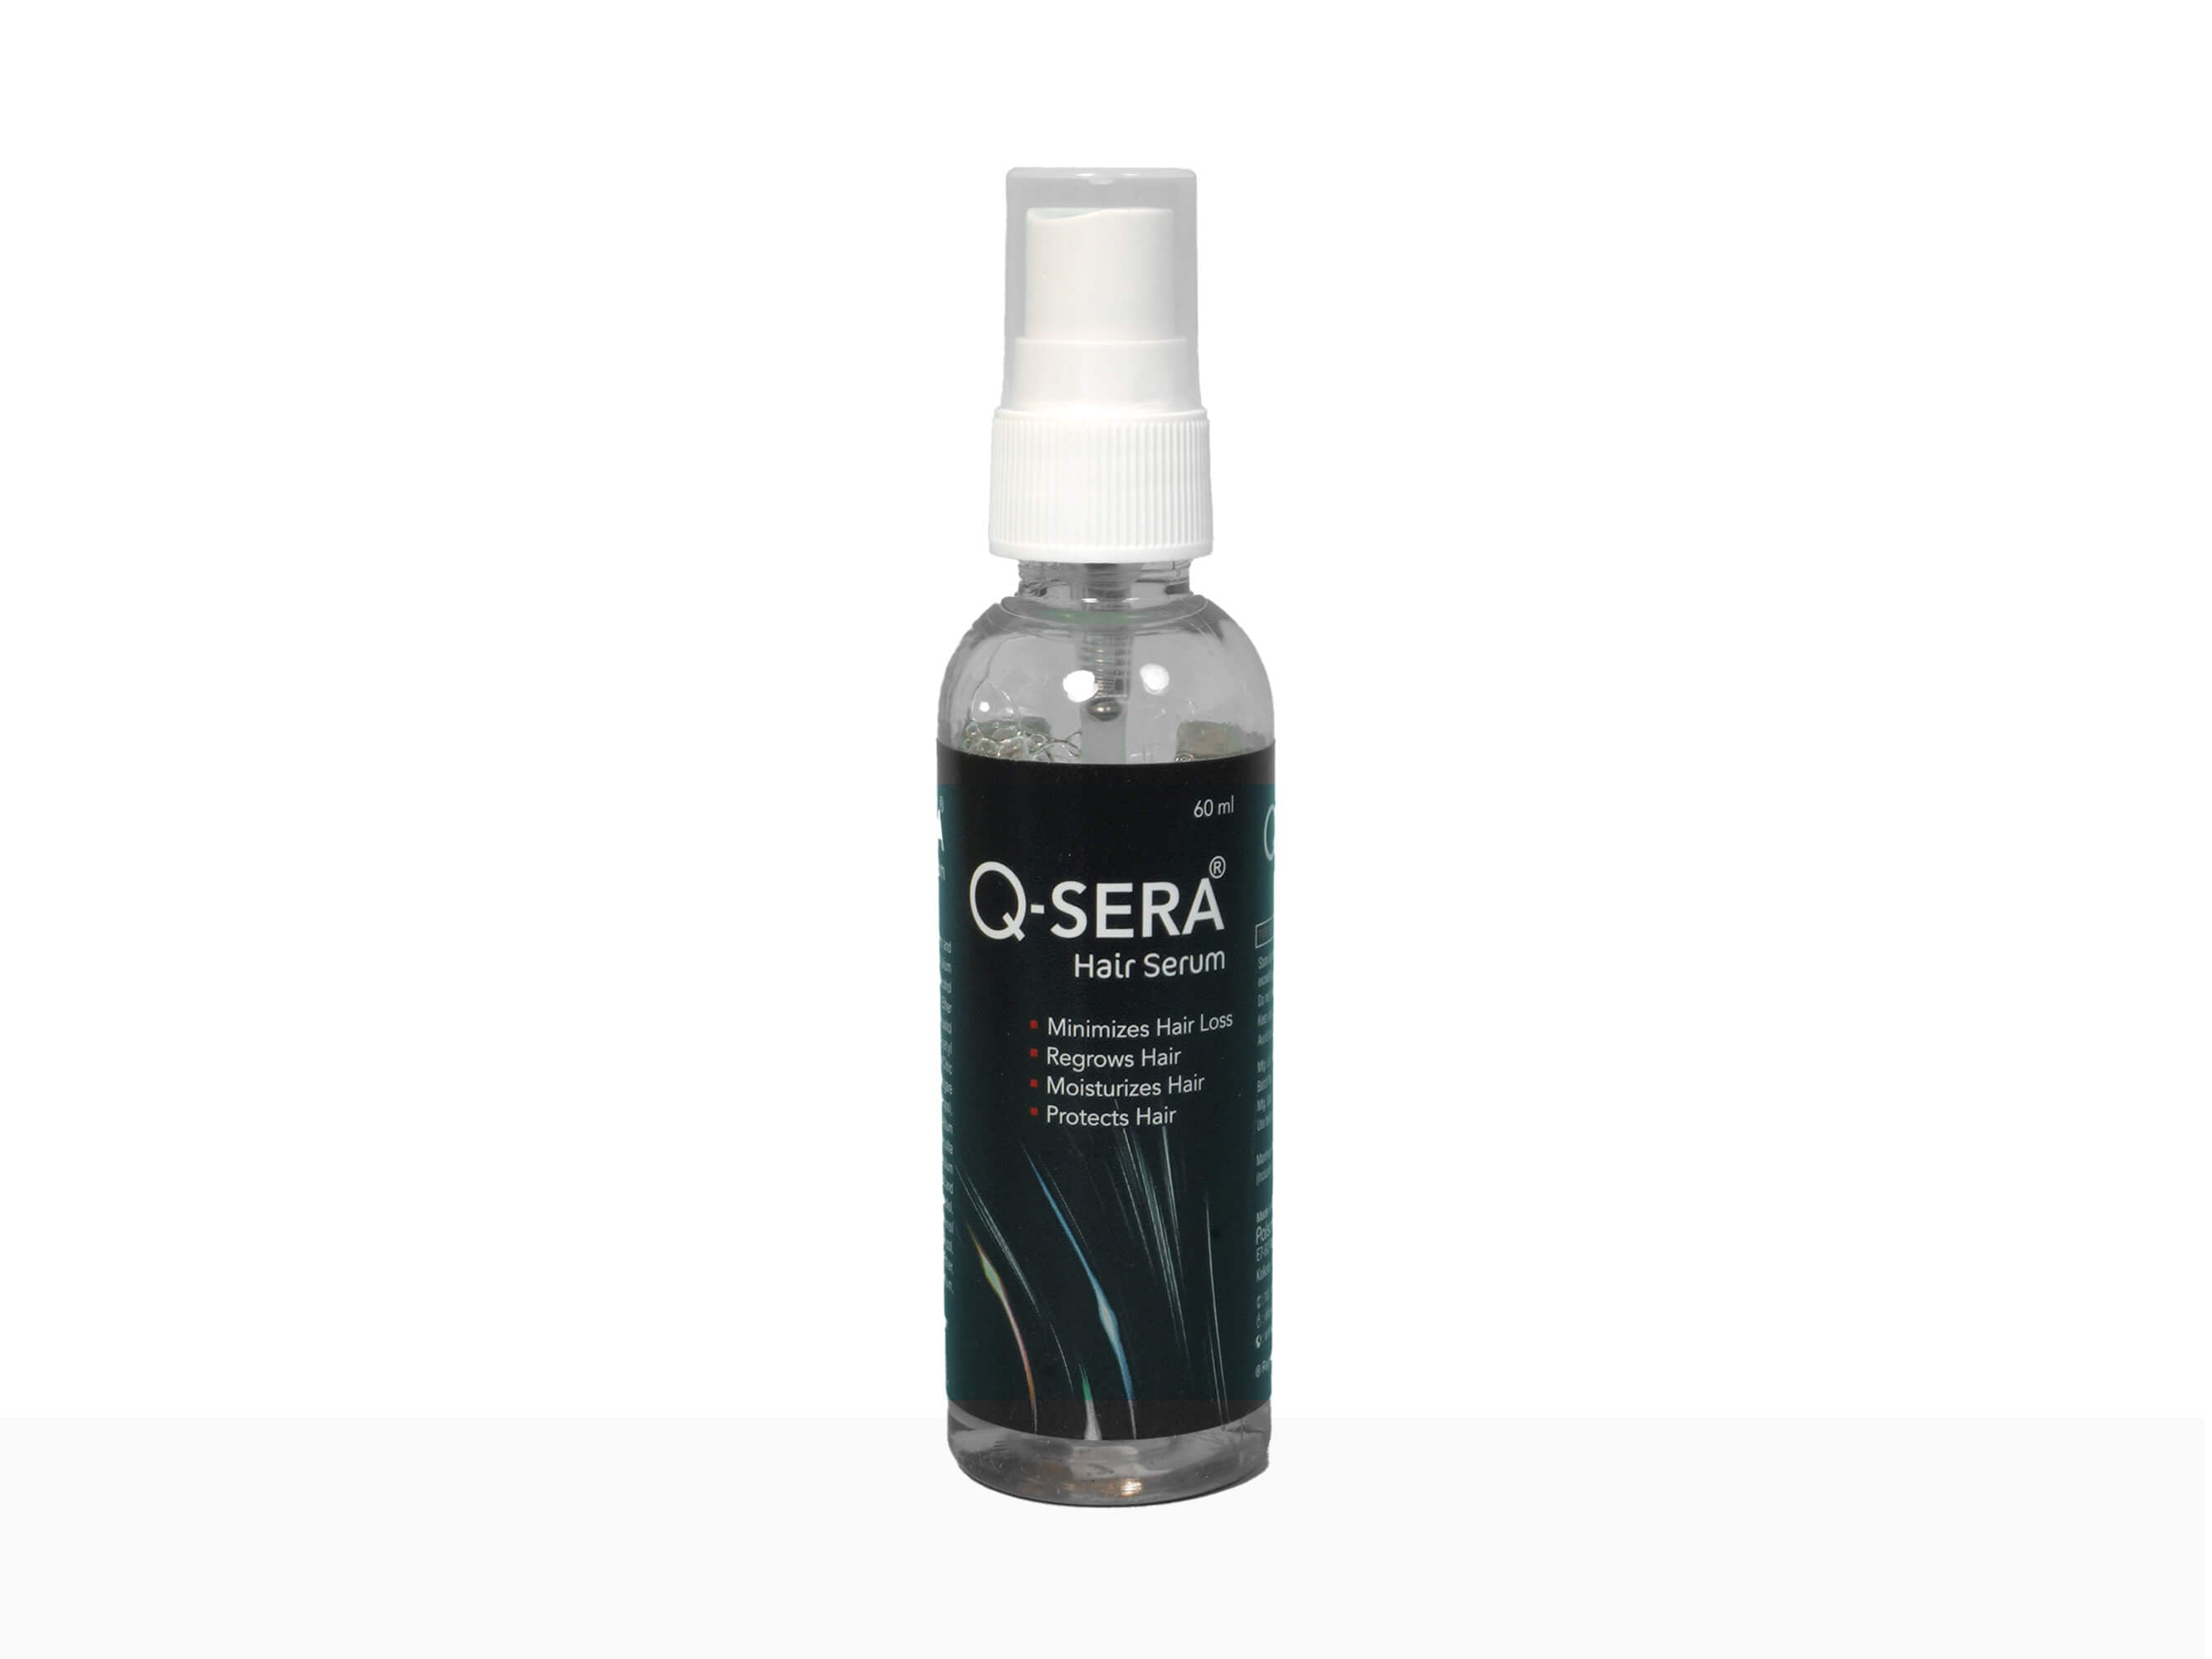 Q-sera hair serum - Clinikally